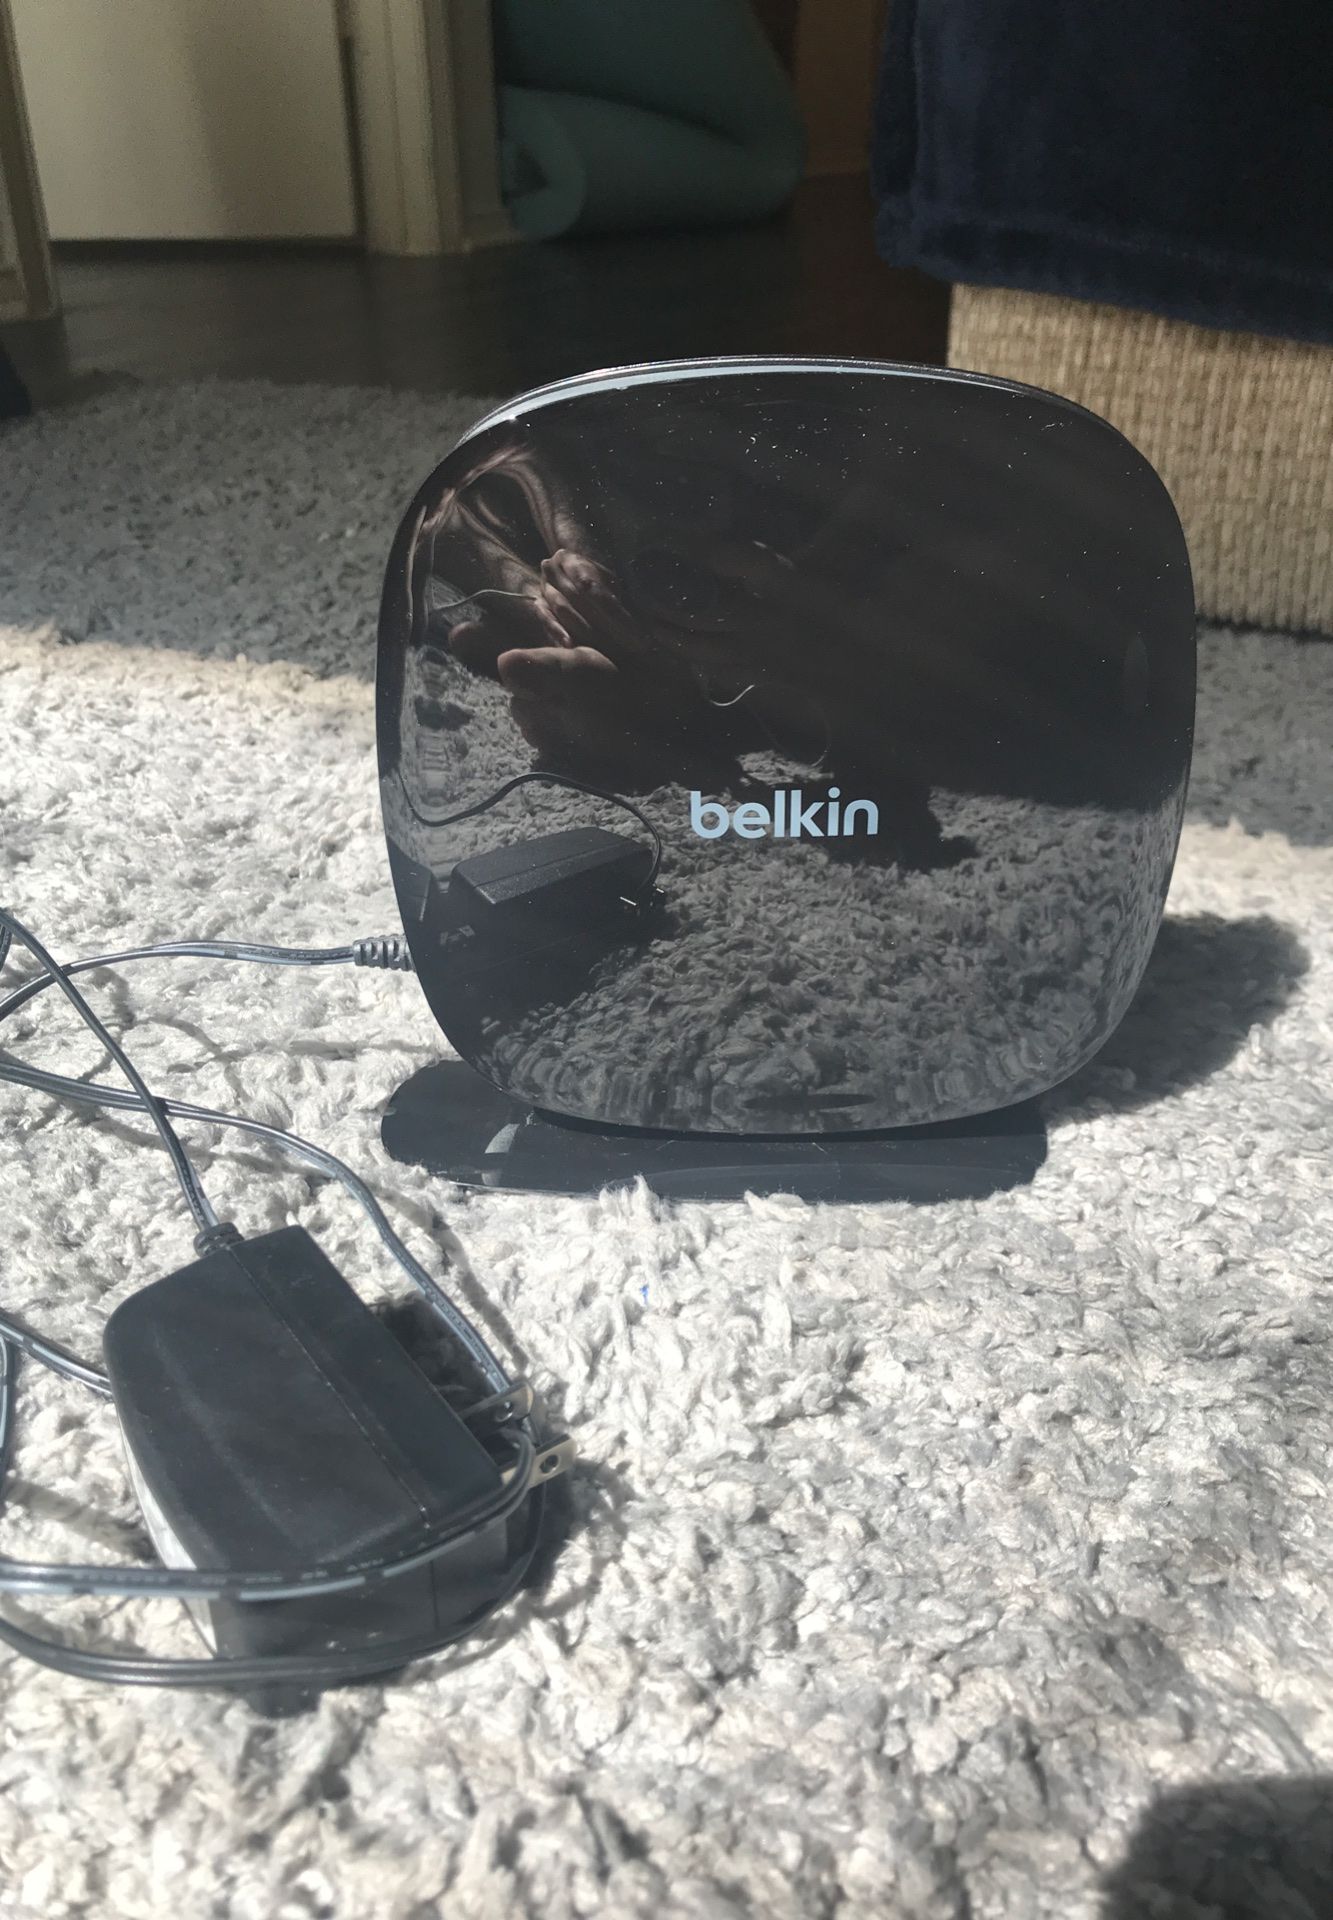 Belkin Wifi Router